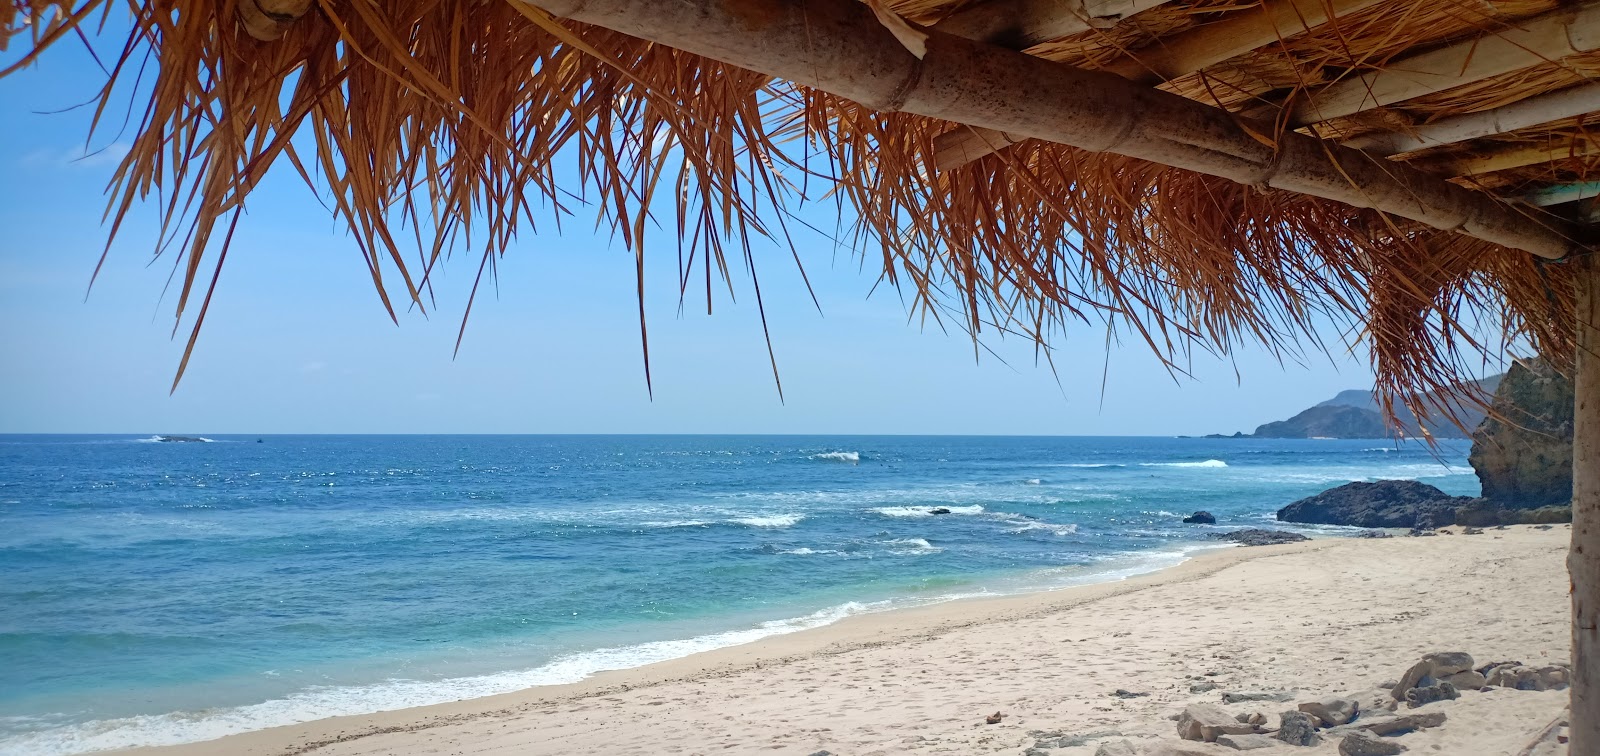 Foto de Mandalika Queen Beach - lugar popular entre los conocedores del relax